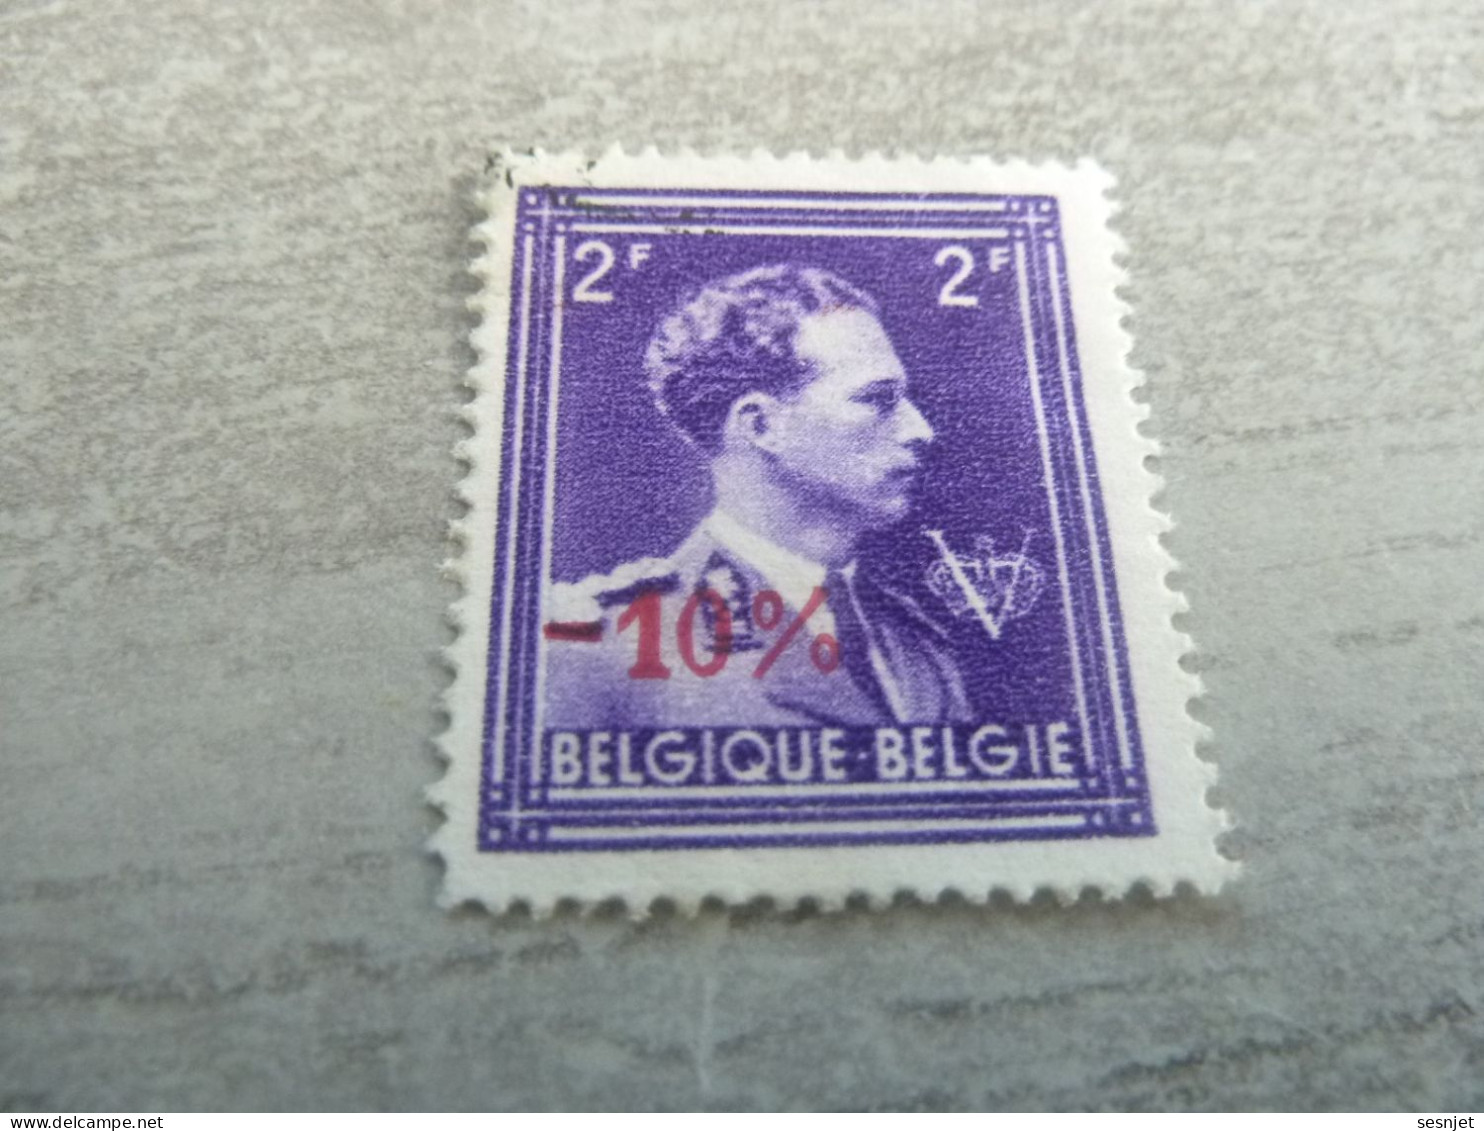 Belgique - Albert 1 - Val  2f. - Surcharge Rouge 10 % - Violet - Oblitéré - Année 1950 - - Oblitérés